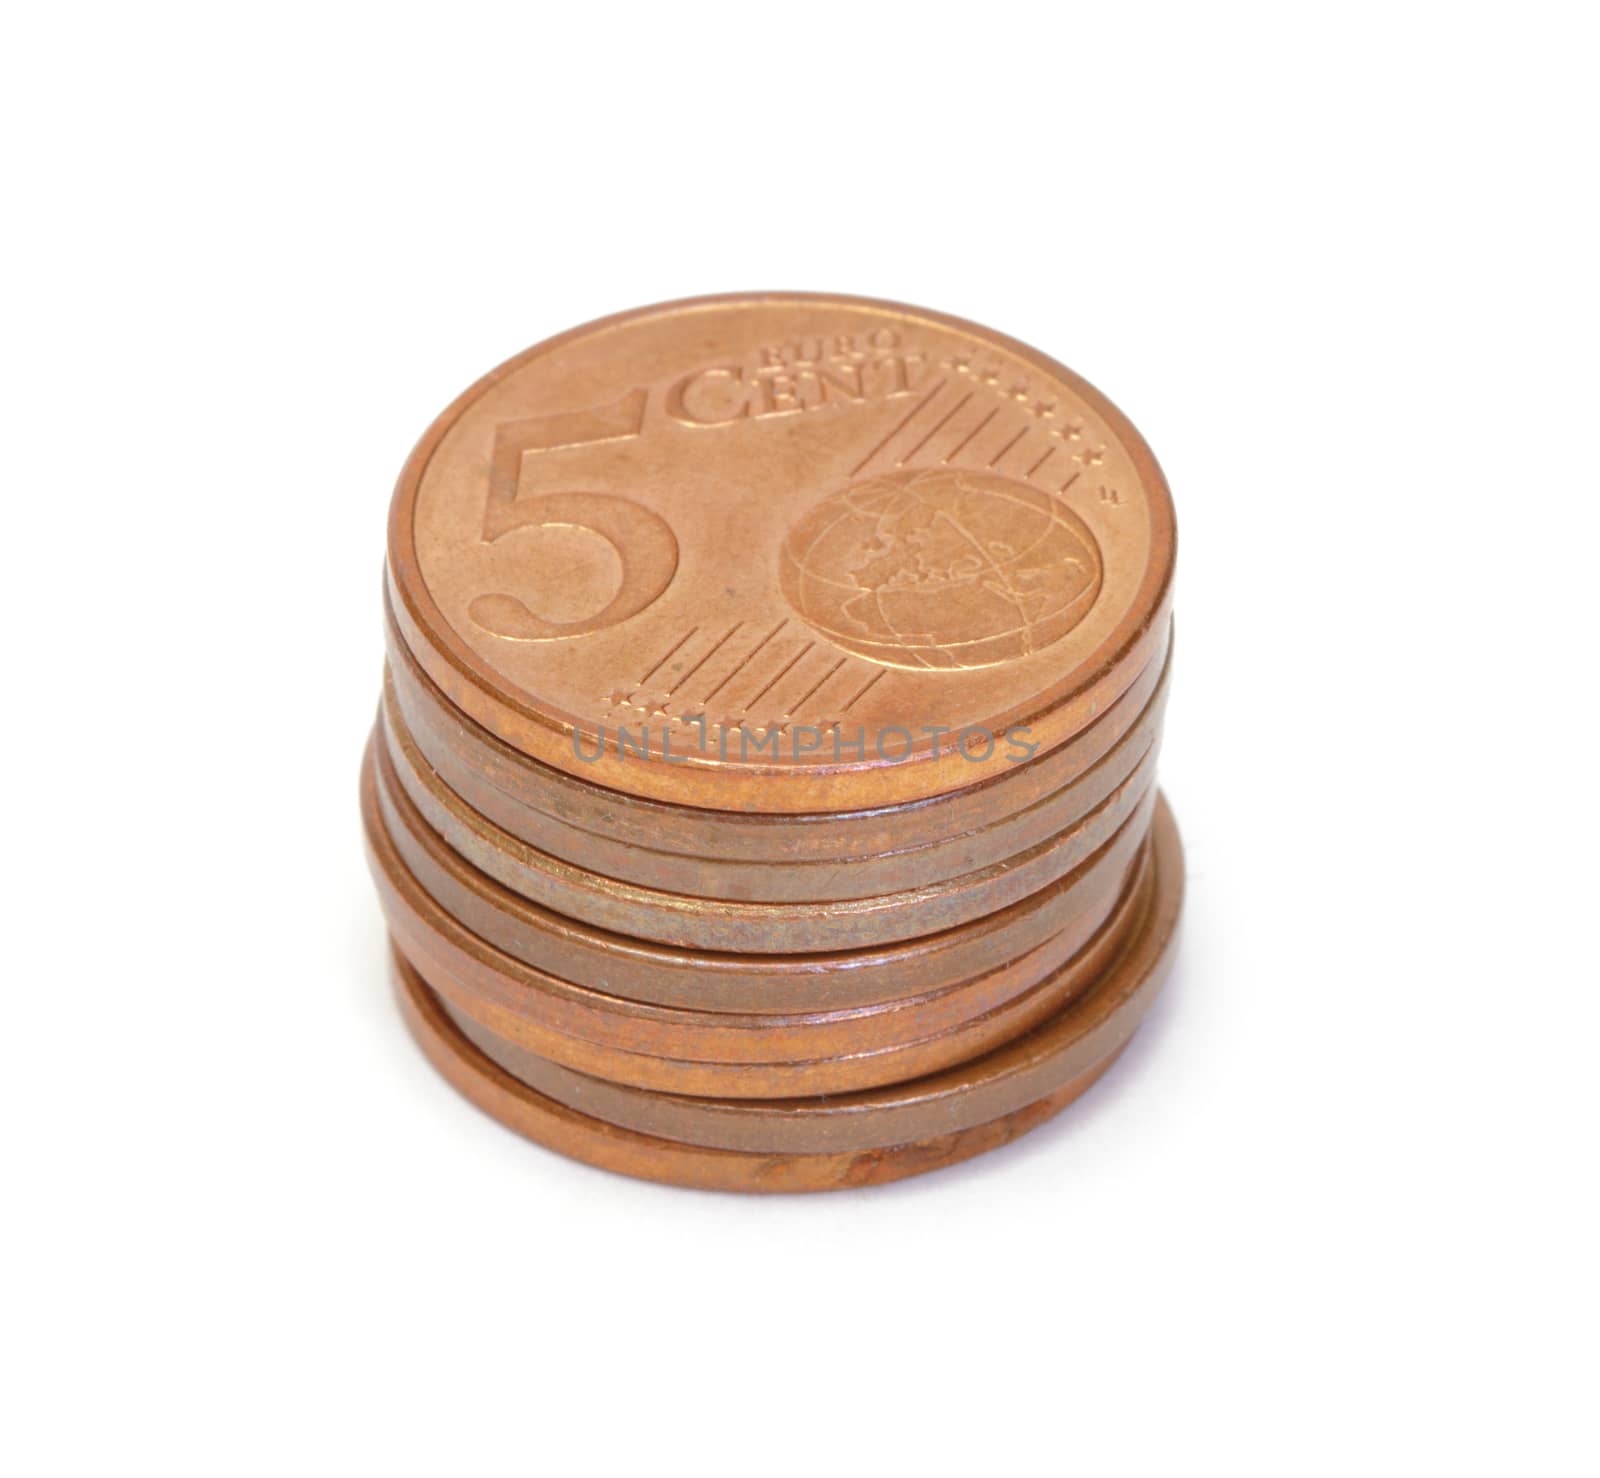 Euro coins by marslander